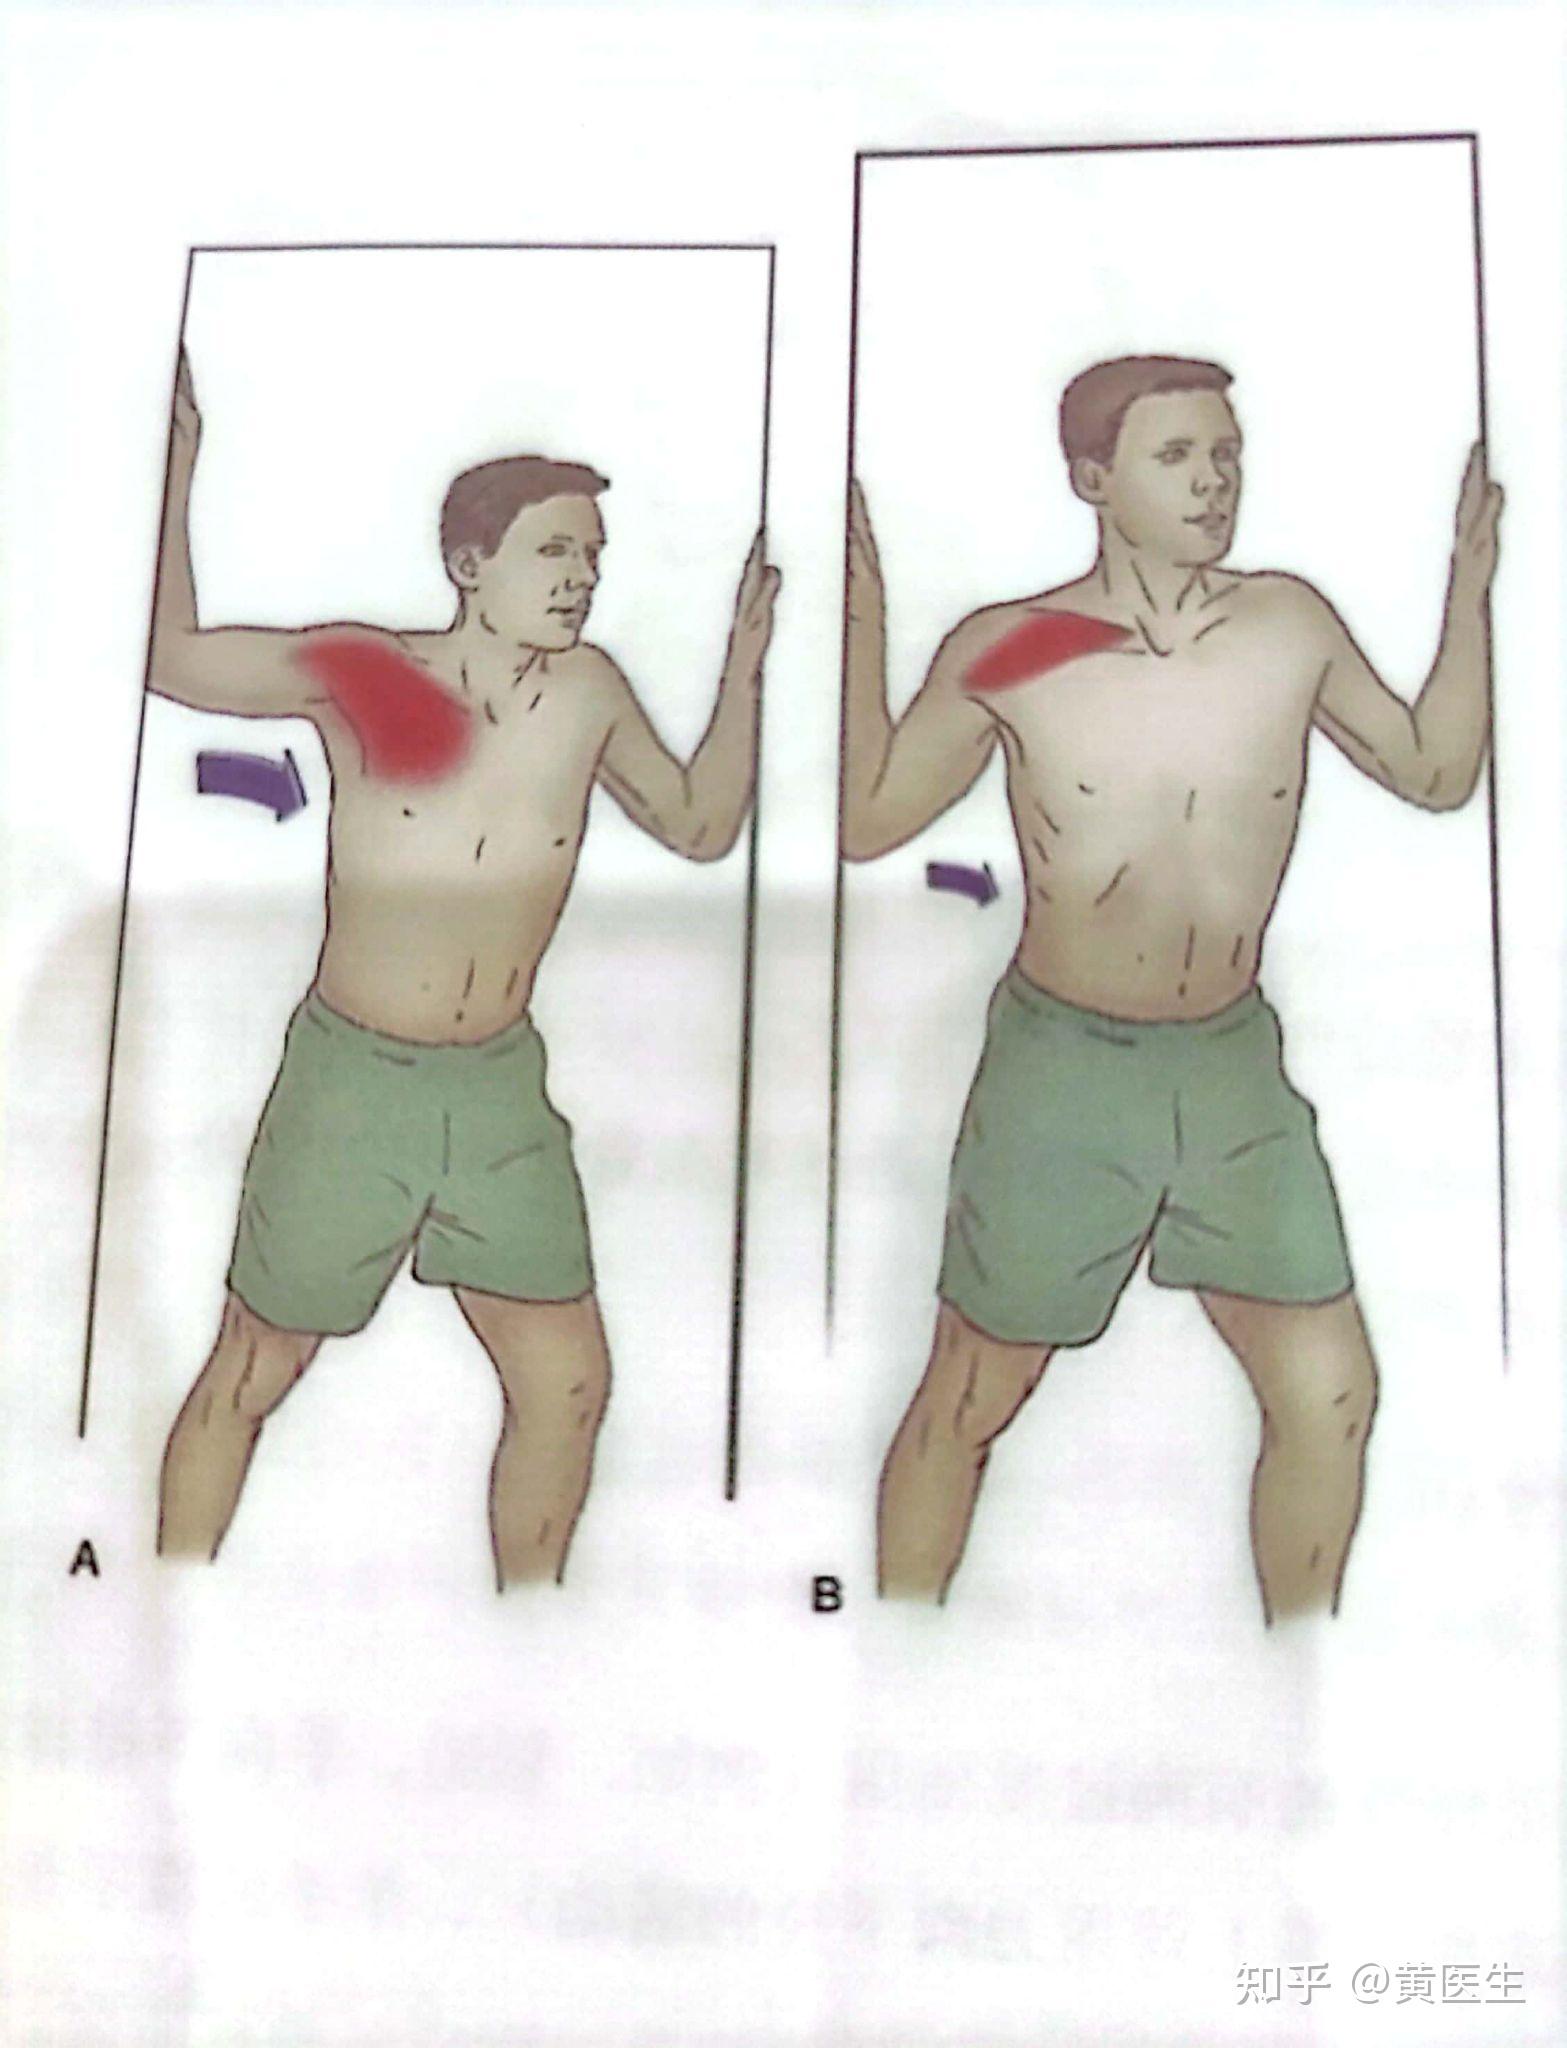 2斜方肌,肩胛提肌的牵伸训练3前锯肌的训练4斜方肌中,下束的训练5